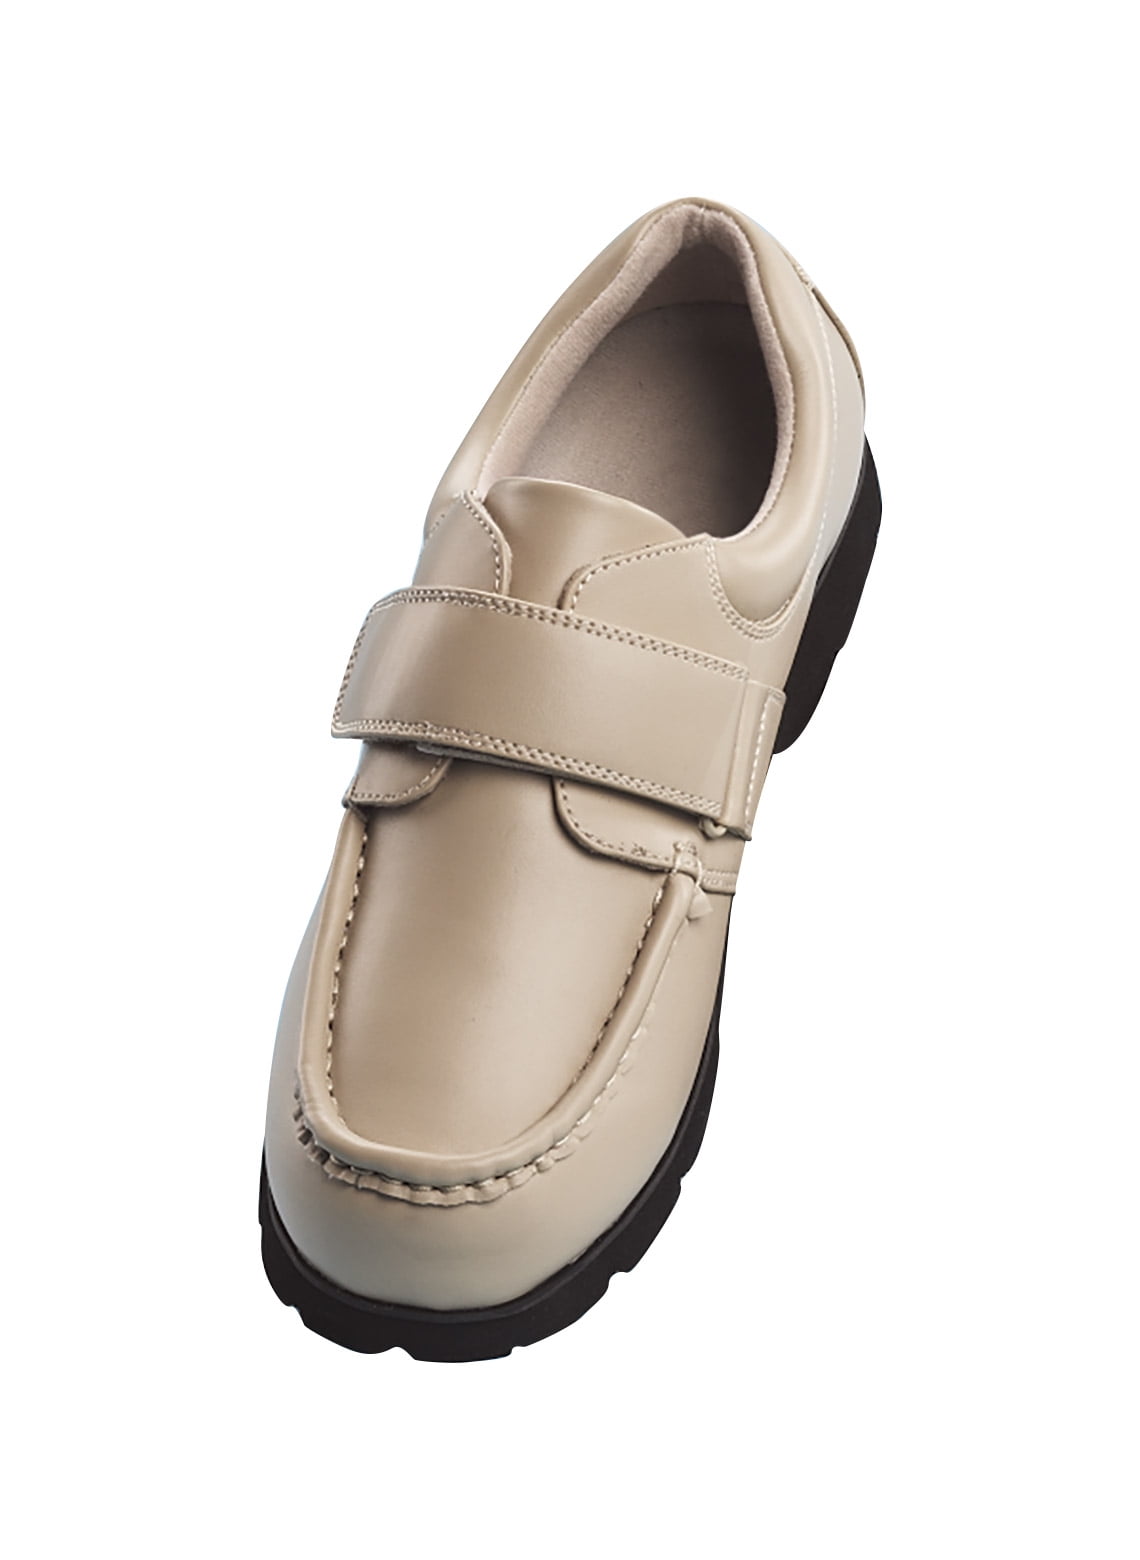 velcro strap mens shoes